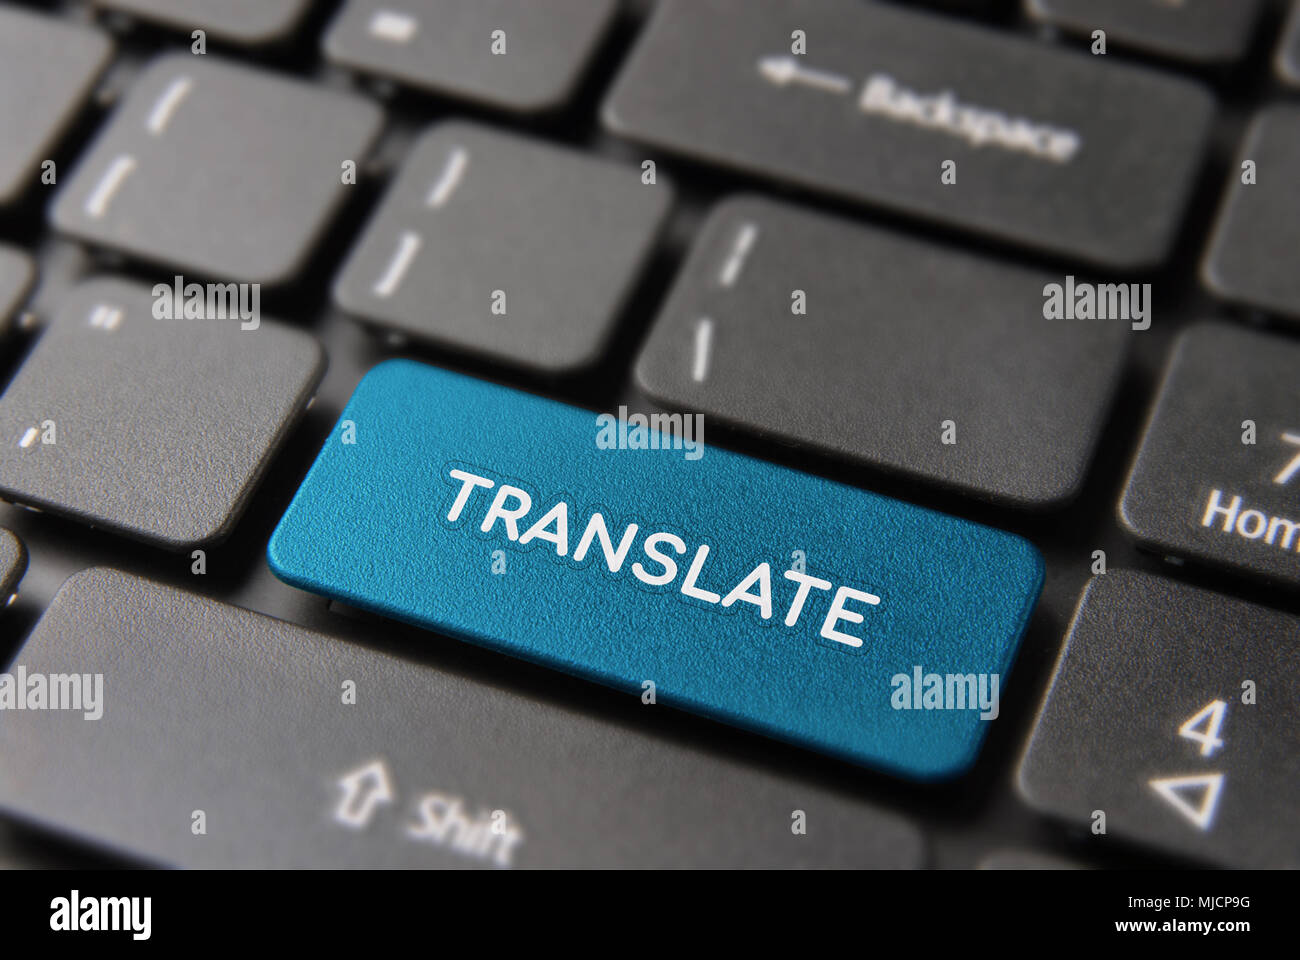 Traducir texto fotografías e imágenes de alta resolución - Alamy